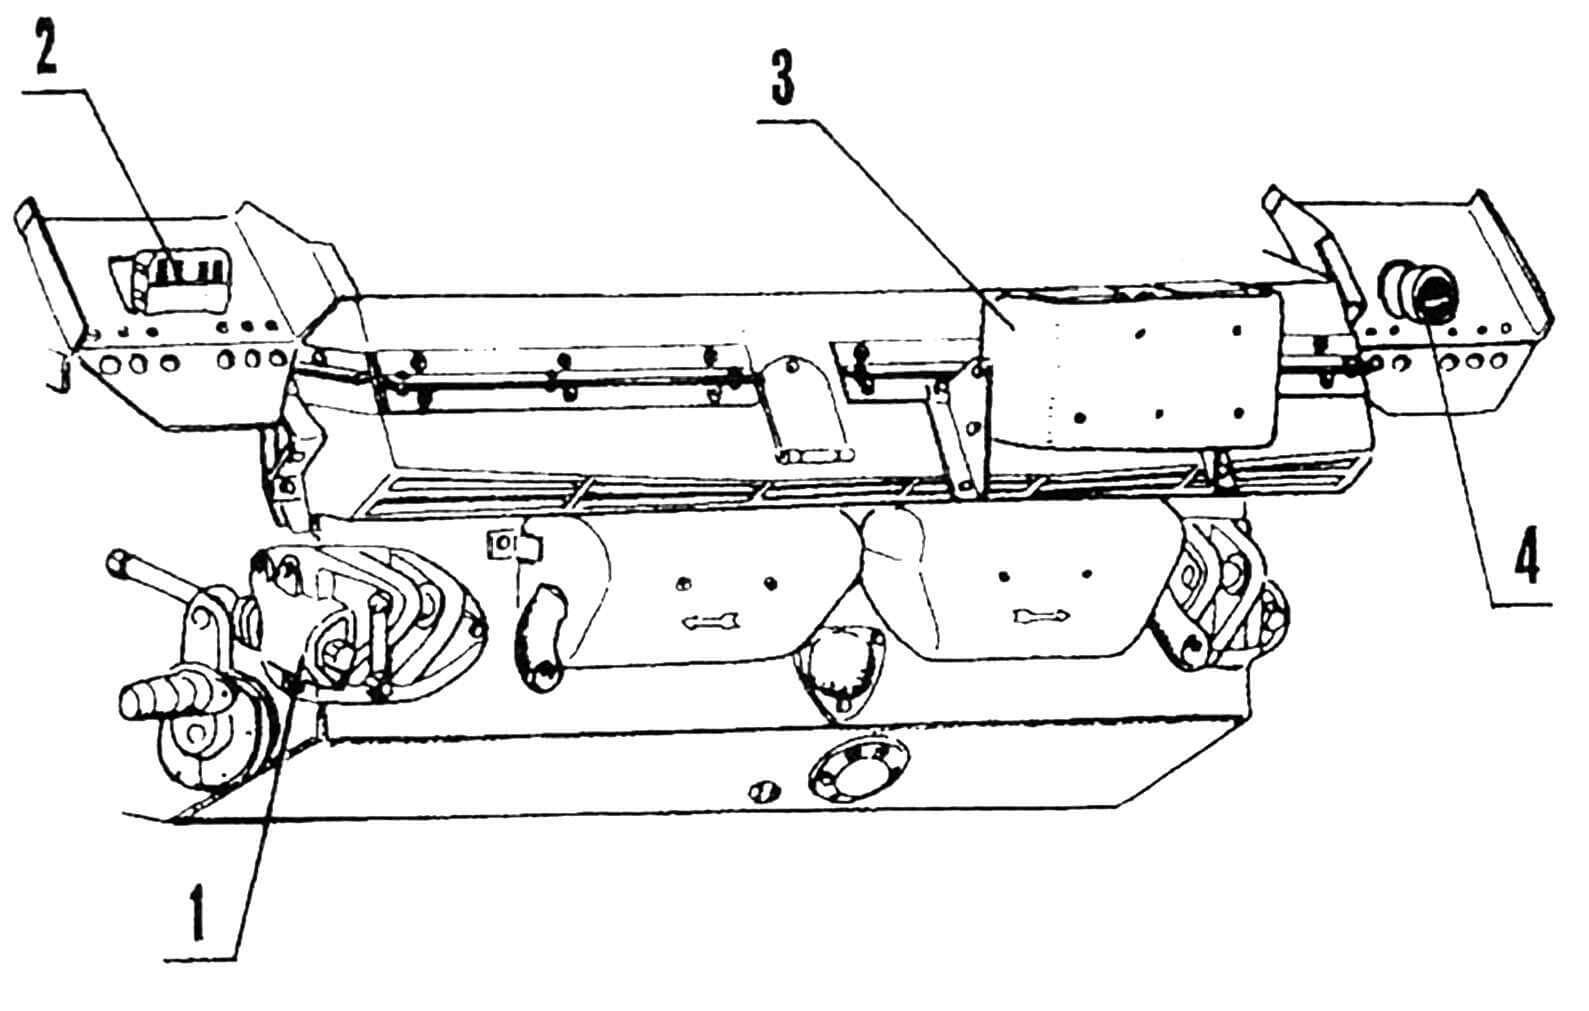 Кормовая часть корпуса: 1 — механизм натяжения гусеницы; 2 — индикатор световой; 3 — прибор дымопуска; 4 — фонарь габаритный.